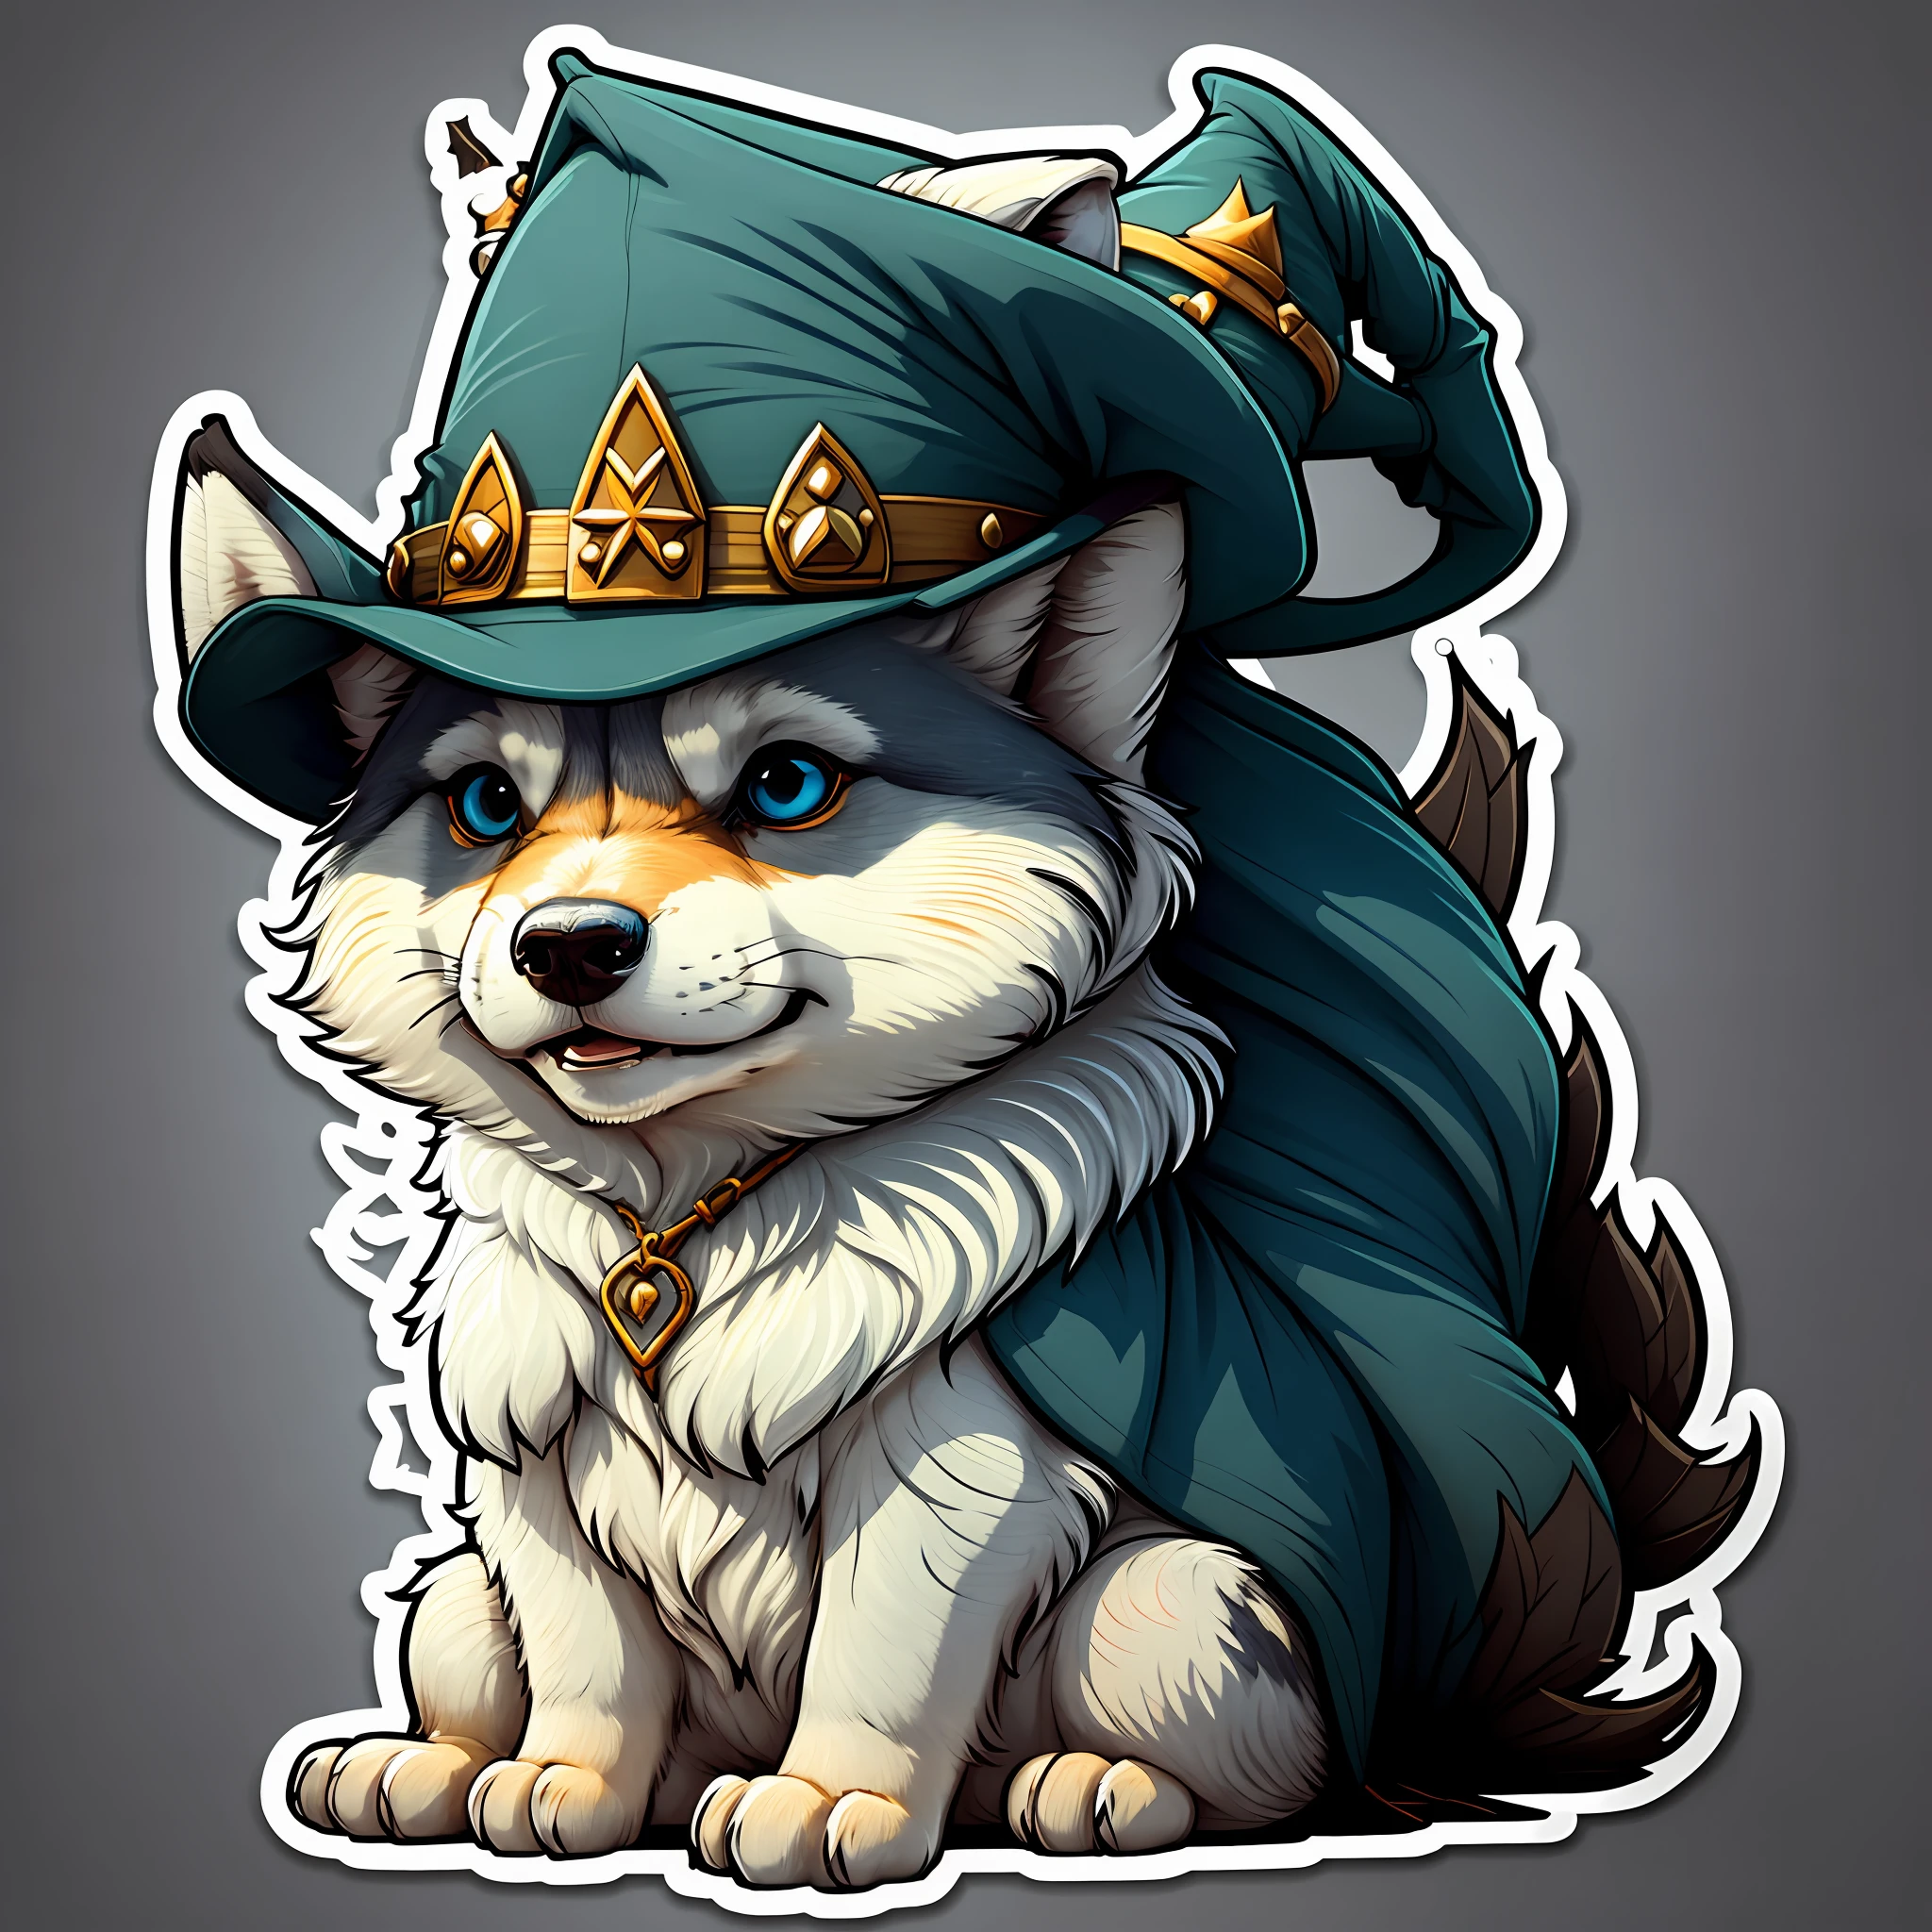 판타지 마법사 모자를 쓰고 있는 늑대 머리의 귀여운 만화 스티커